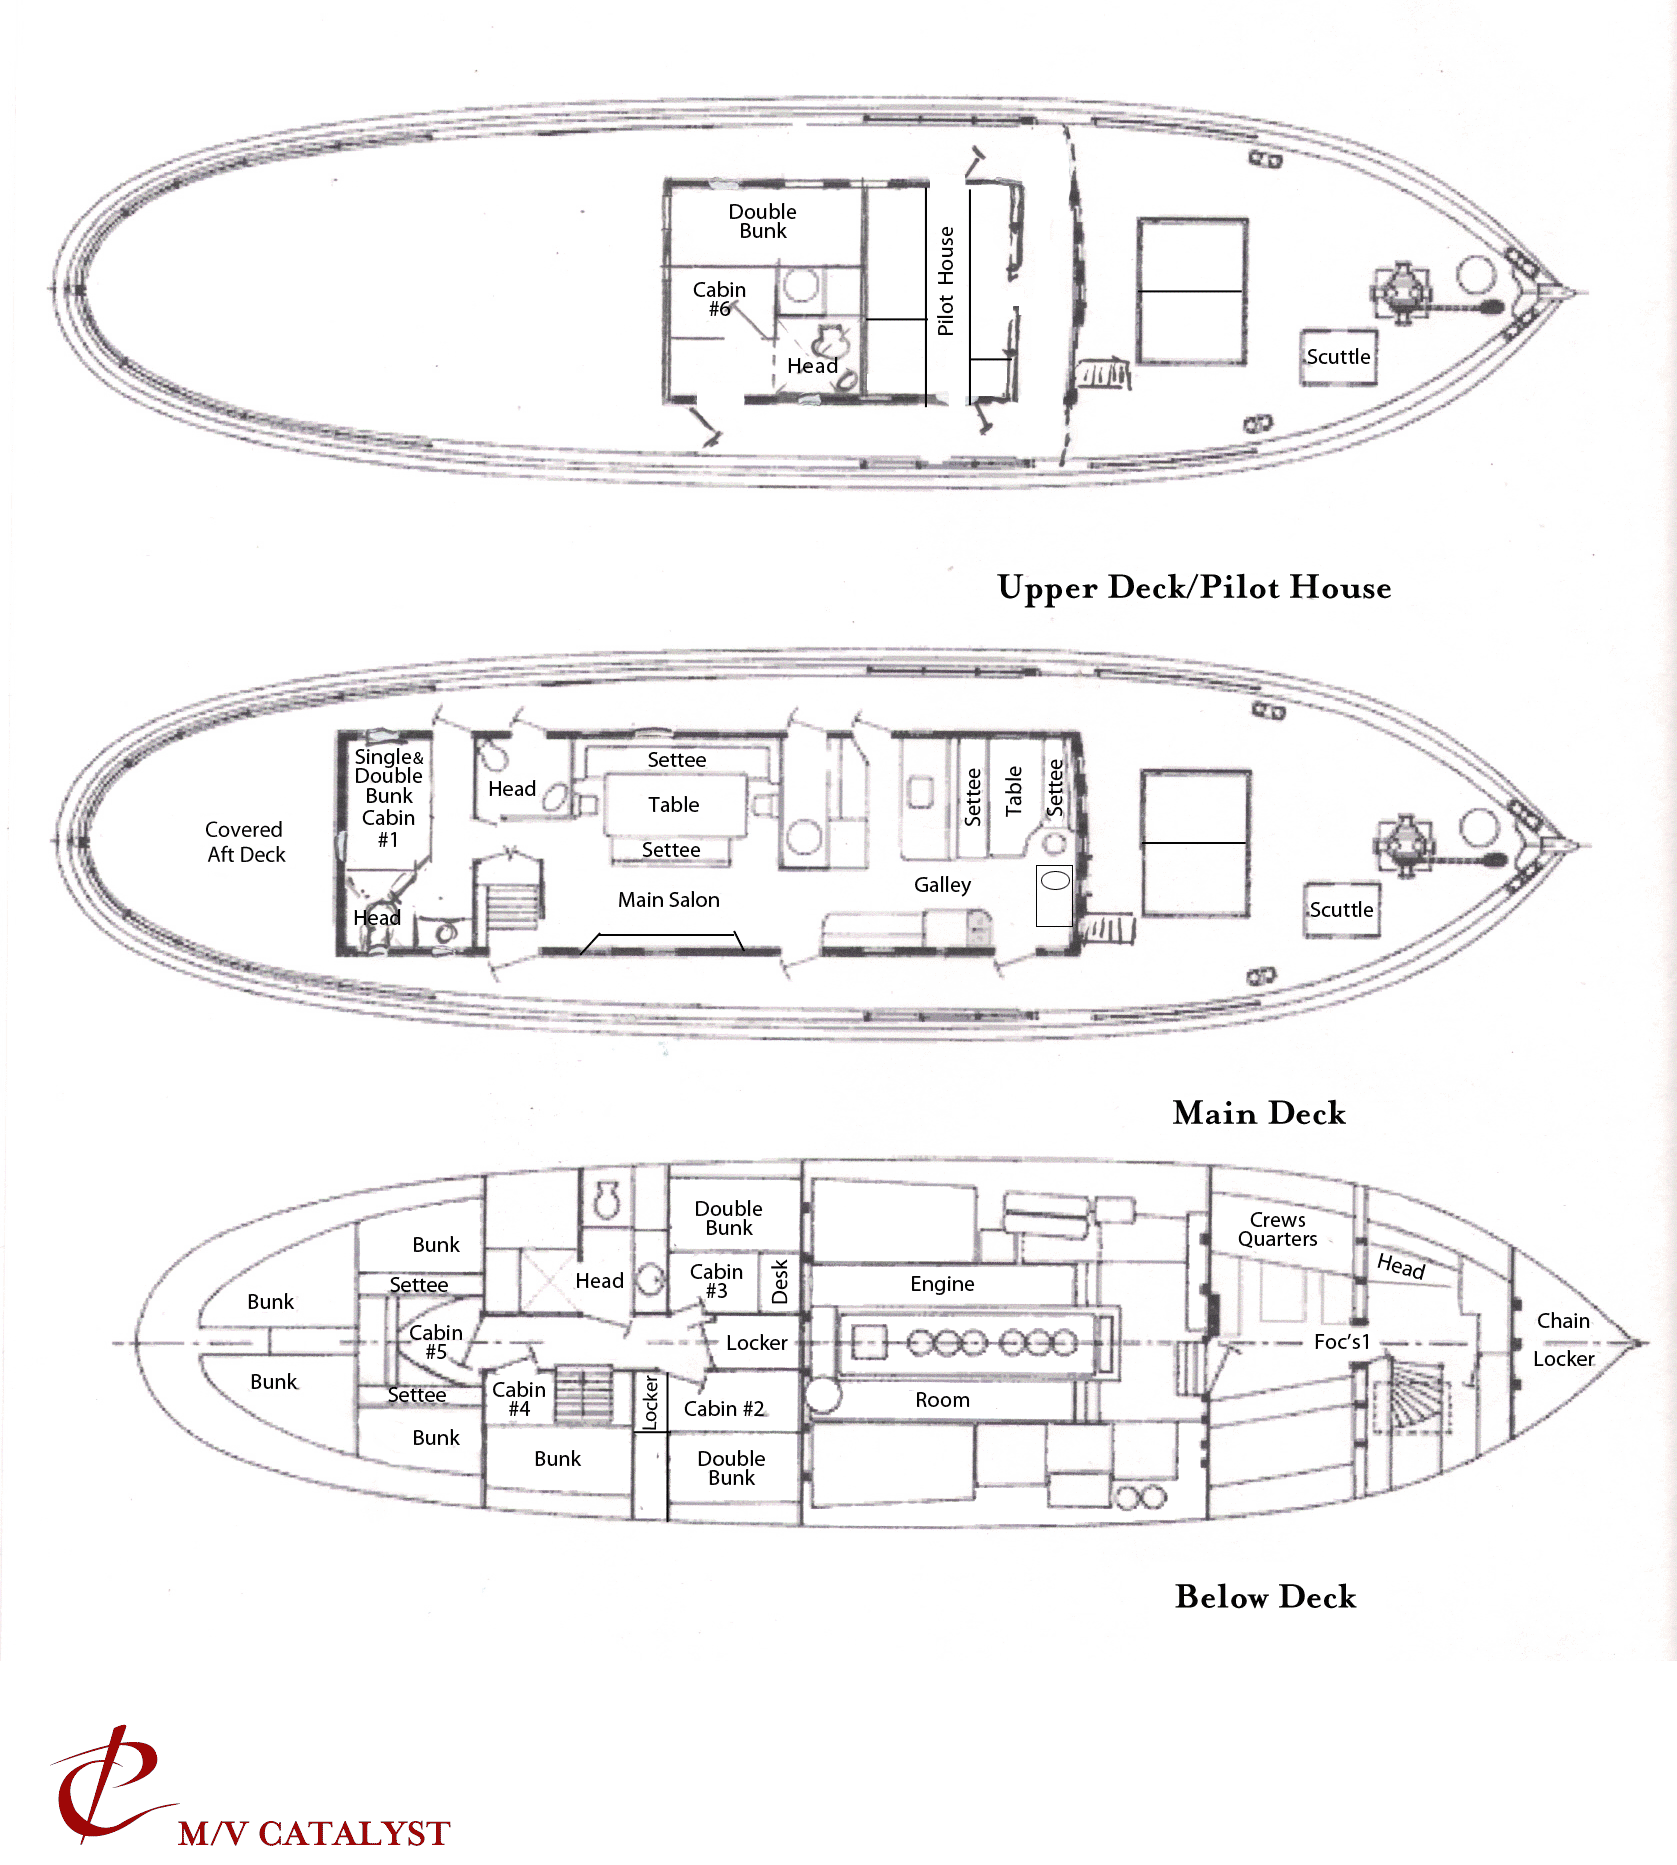 Catalyst deck plan showing 6 guest cabins & 3 decks: below deck, main deck & upper deck with pilot house.